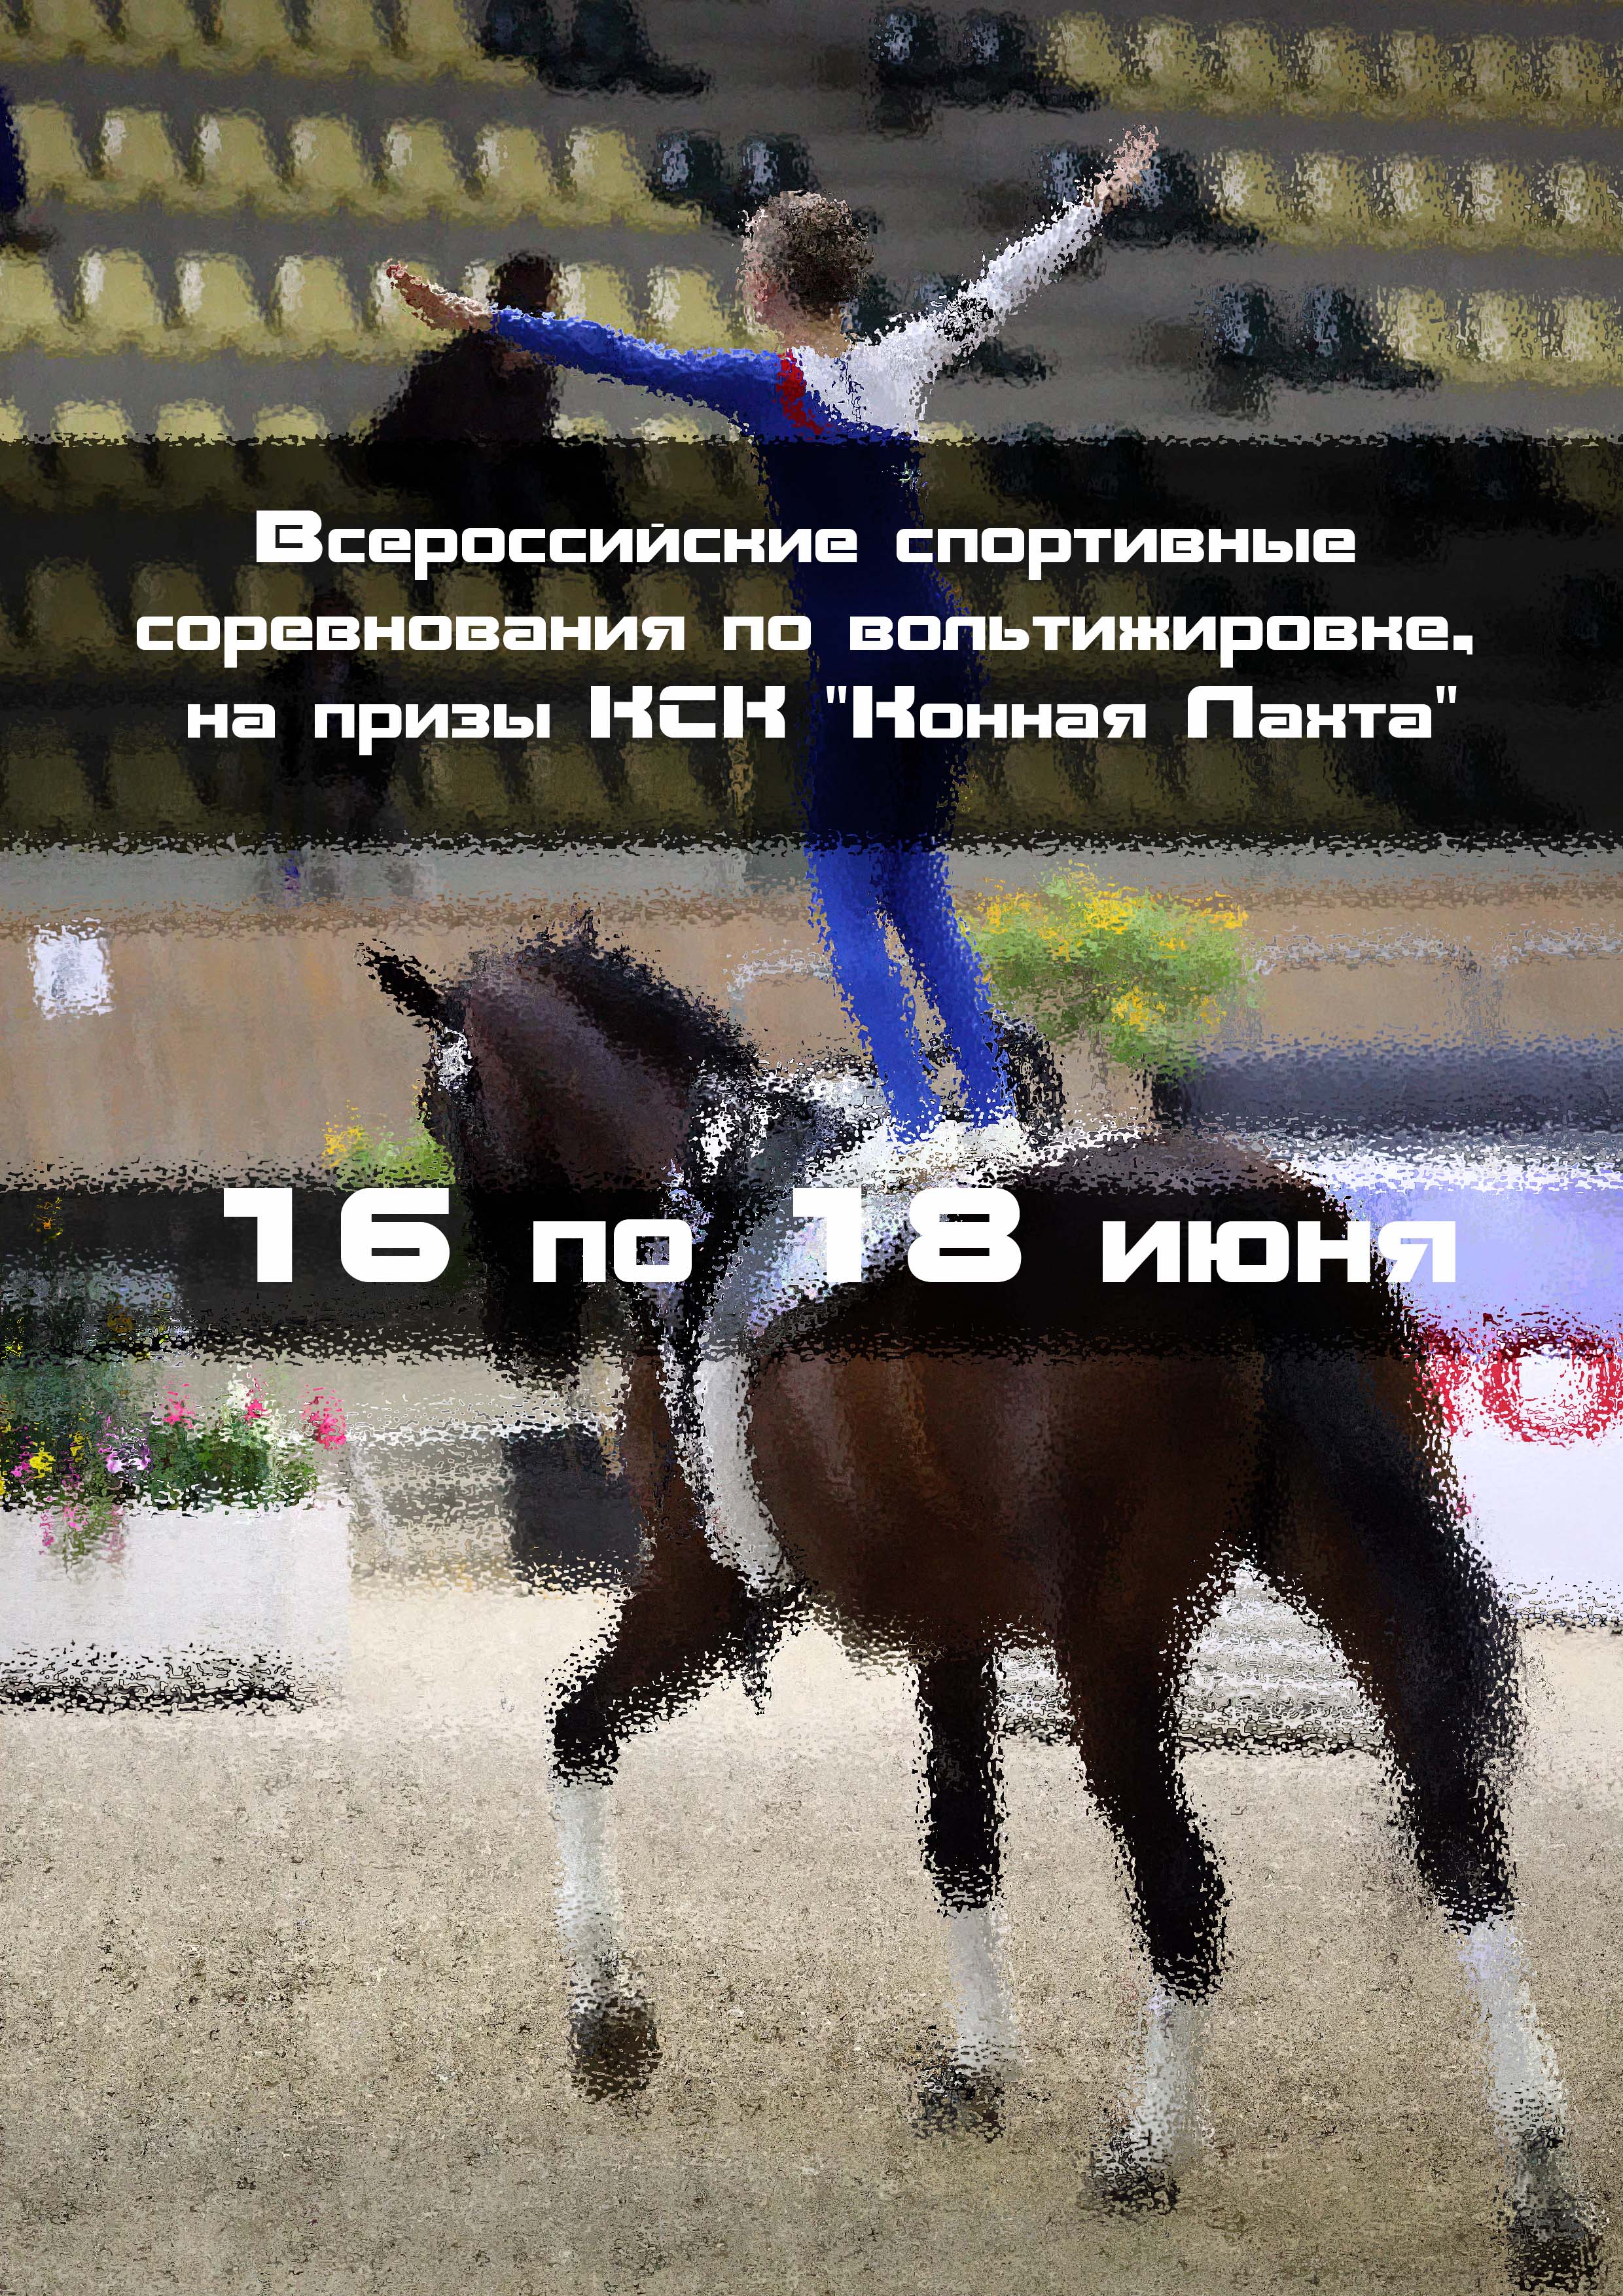 Всероссийские спортивные соревнования по вольтижировке, на призы КСК "Конная Лахта" 16  ខែមិថុនារបស់
 2023  នៅឆ្នាំ
 